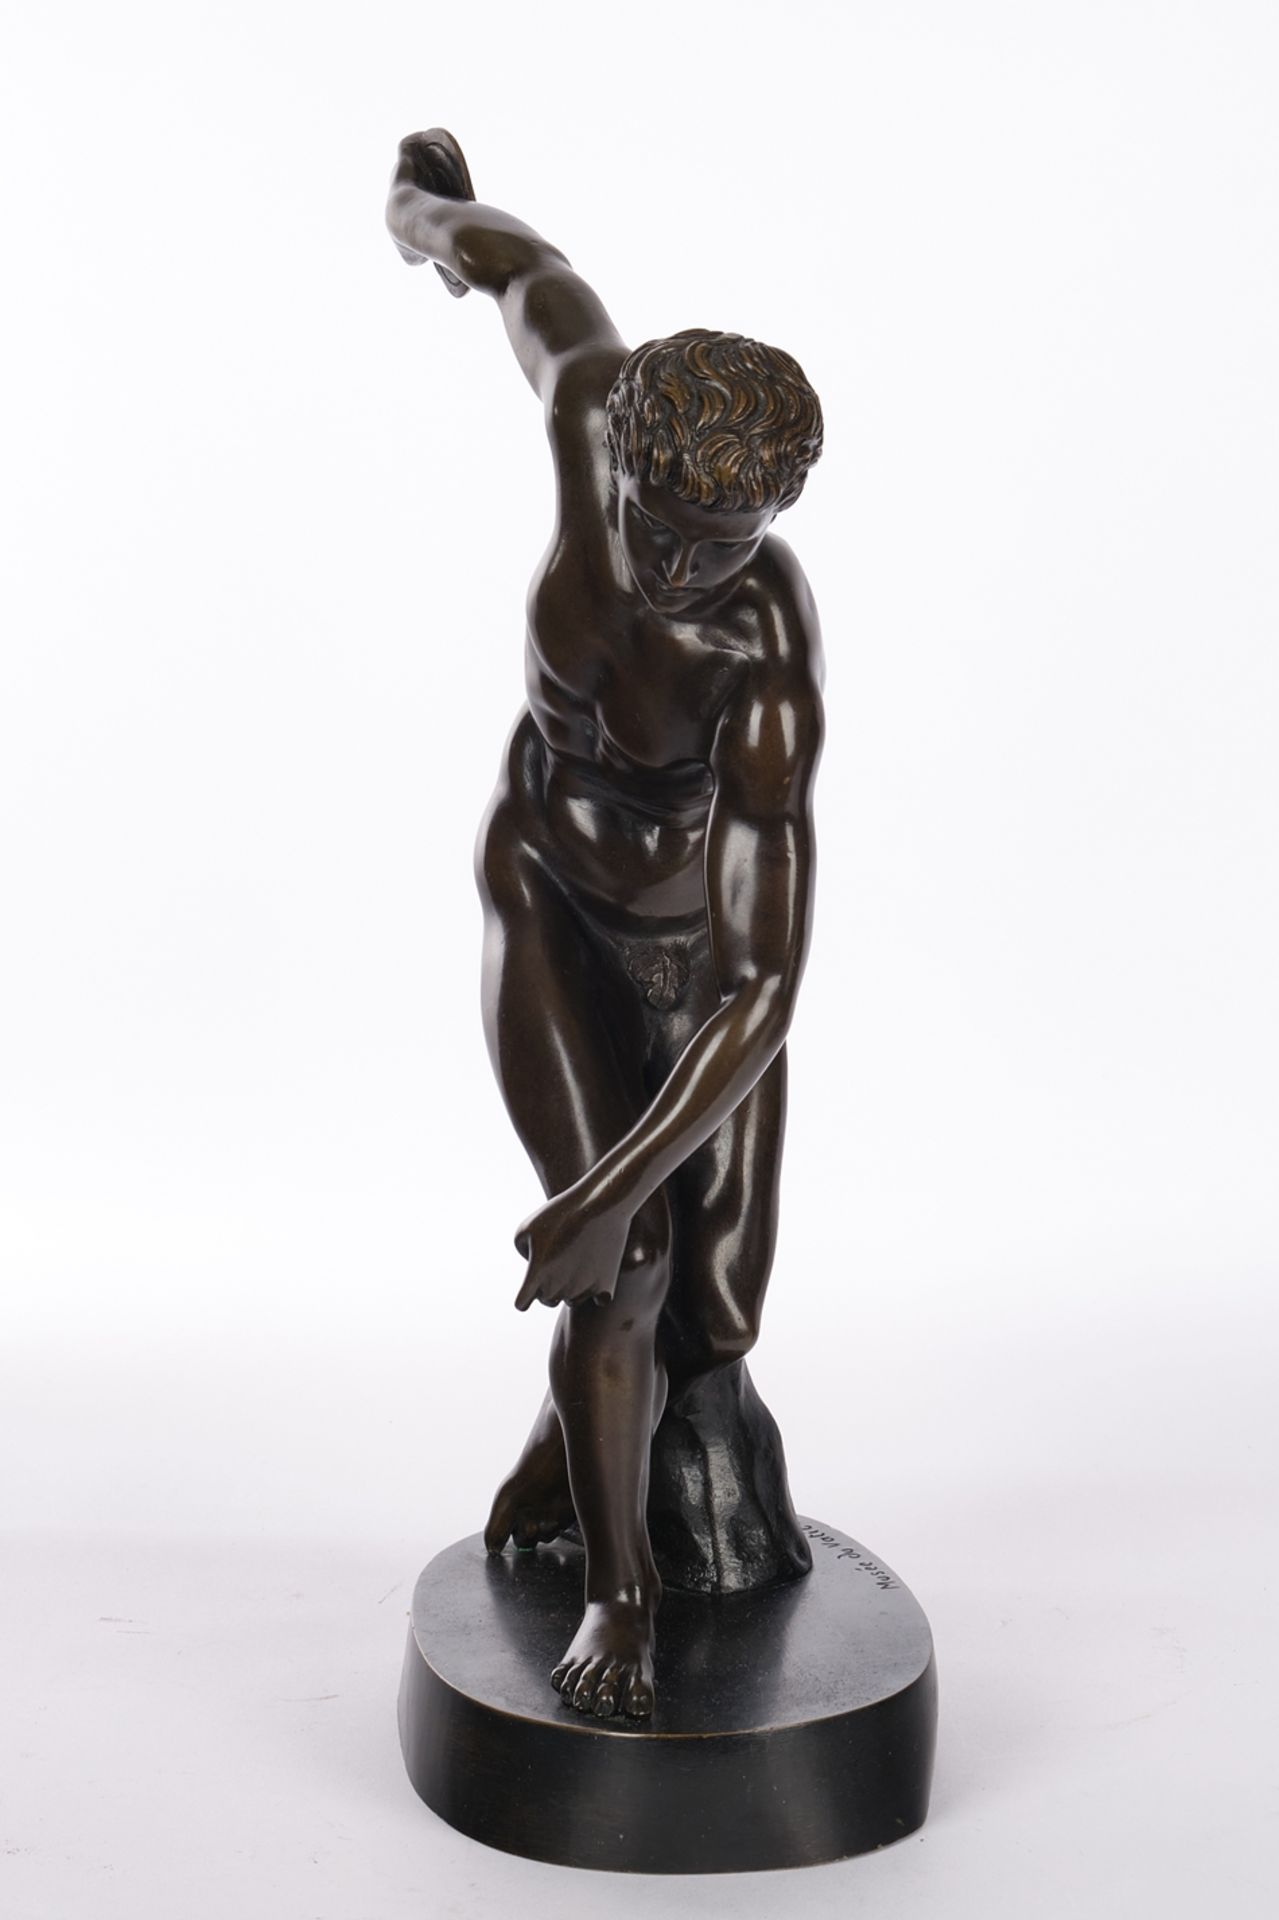 Bronze, "Diskobolos" des Myron, nach Römischer Kopie aus dem 2. Jh. n. Chr., griechisches Original  - Bild 2 aus 5